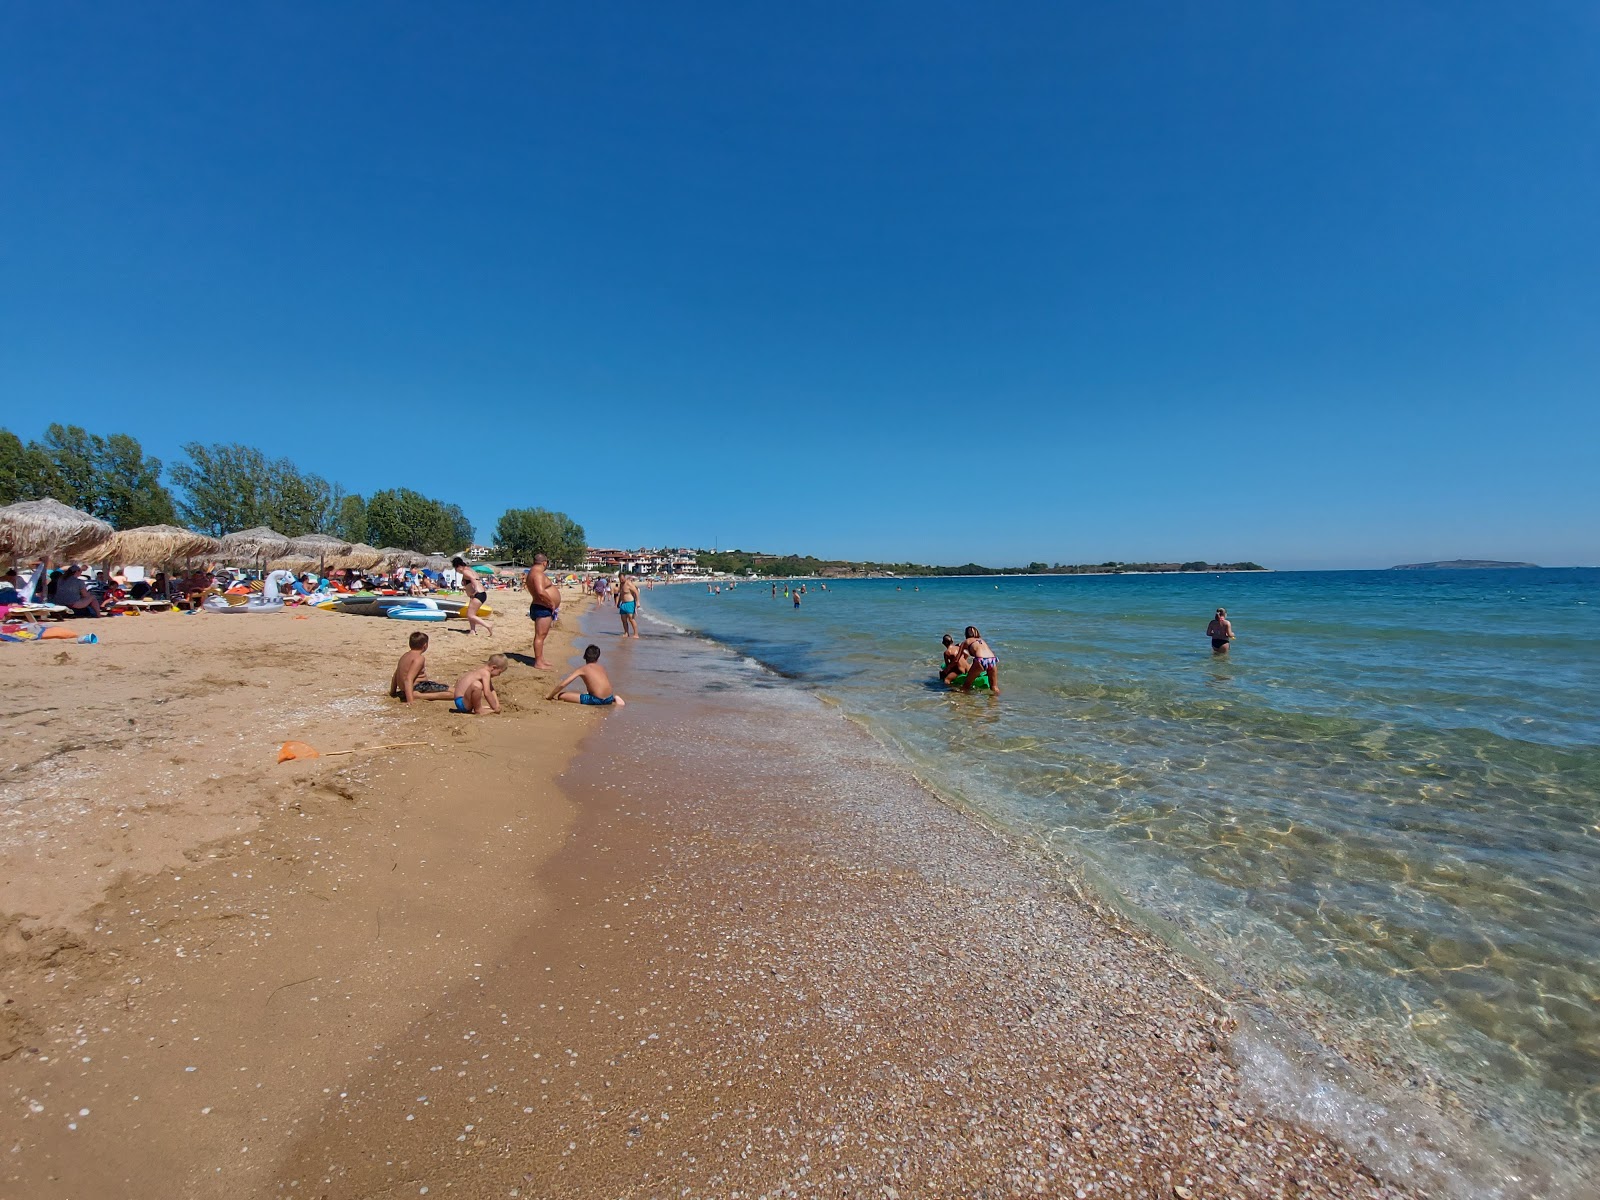 Fotografie cu Zlatna ribka beach II cu o suprafață de nisip strălucitor